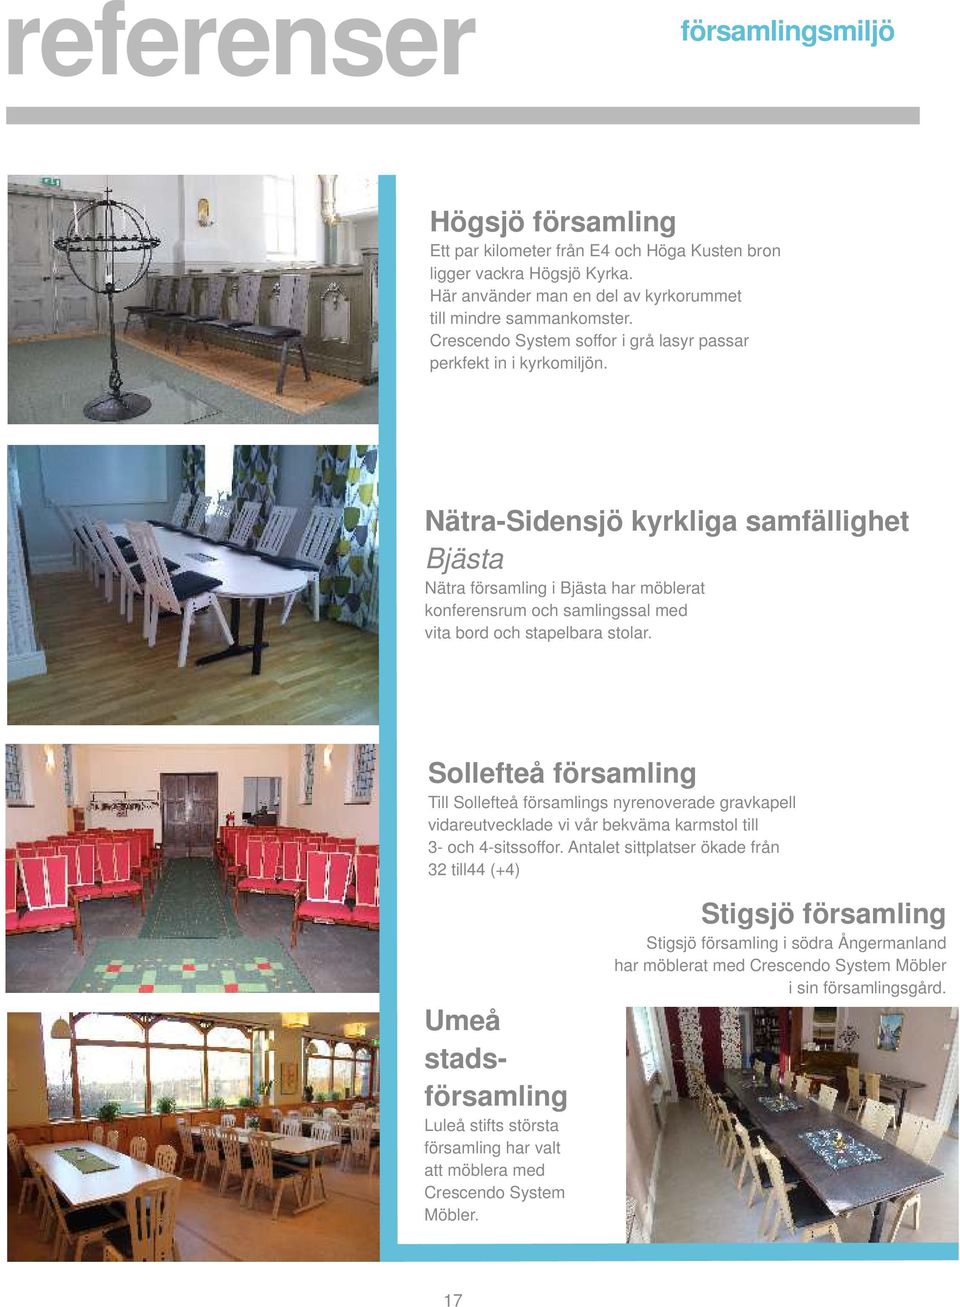 Nätra-Sidensjö kyrkliga samfällighet Bjästa Nätra församling i Bjästa har möblerat konferensrum och samlingssal med vita bord och stapelbara stolar.